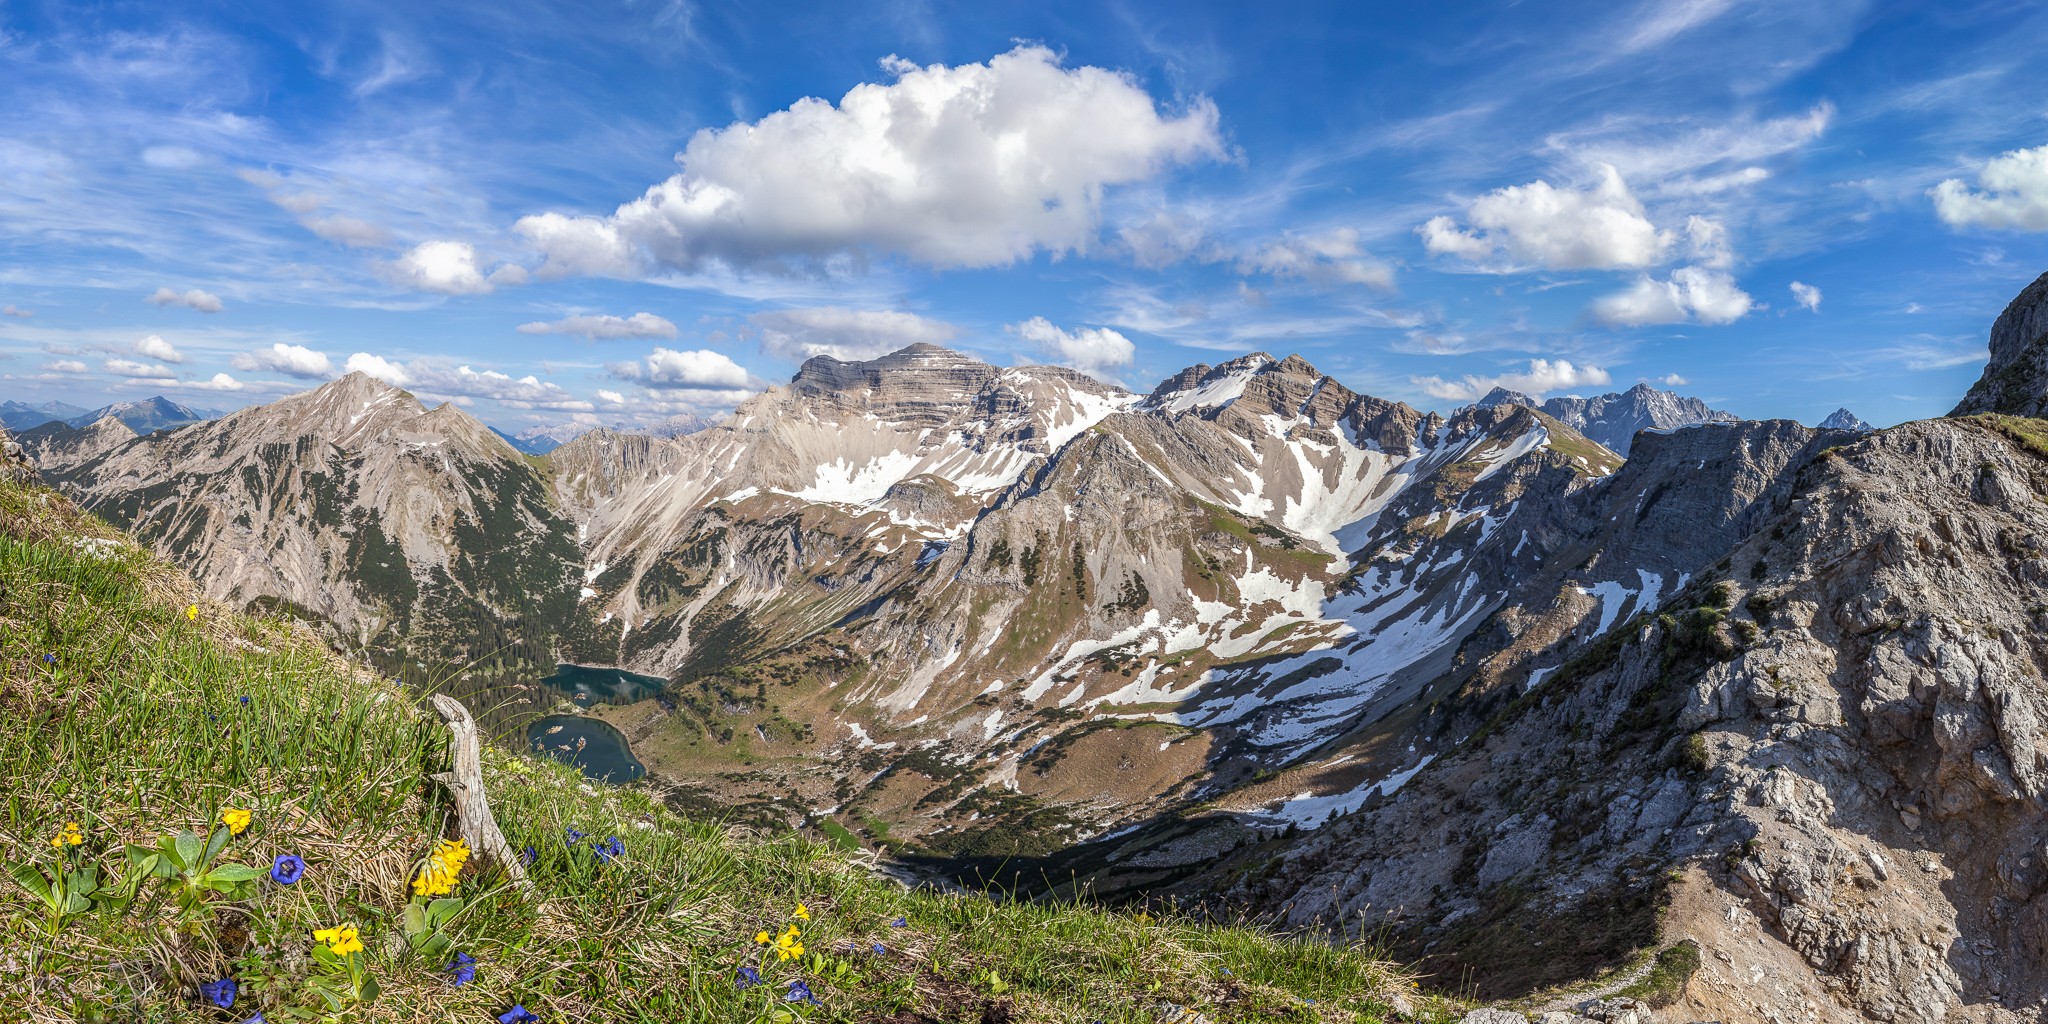 Wanderparadies in der Alpenwelt Karwendel. Auf der Schöttelkarspitze mit Blick auf die Soiernspitze und die Soiernseen. Im Vordergrund Enzian und Bergaurikel. 